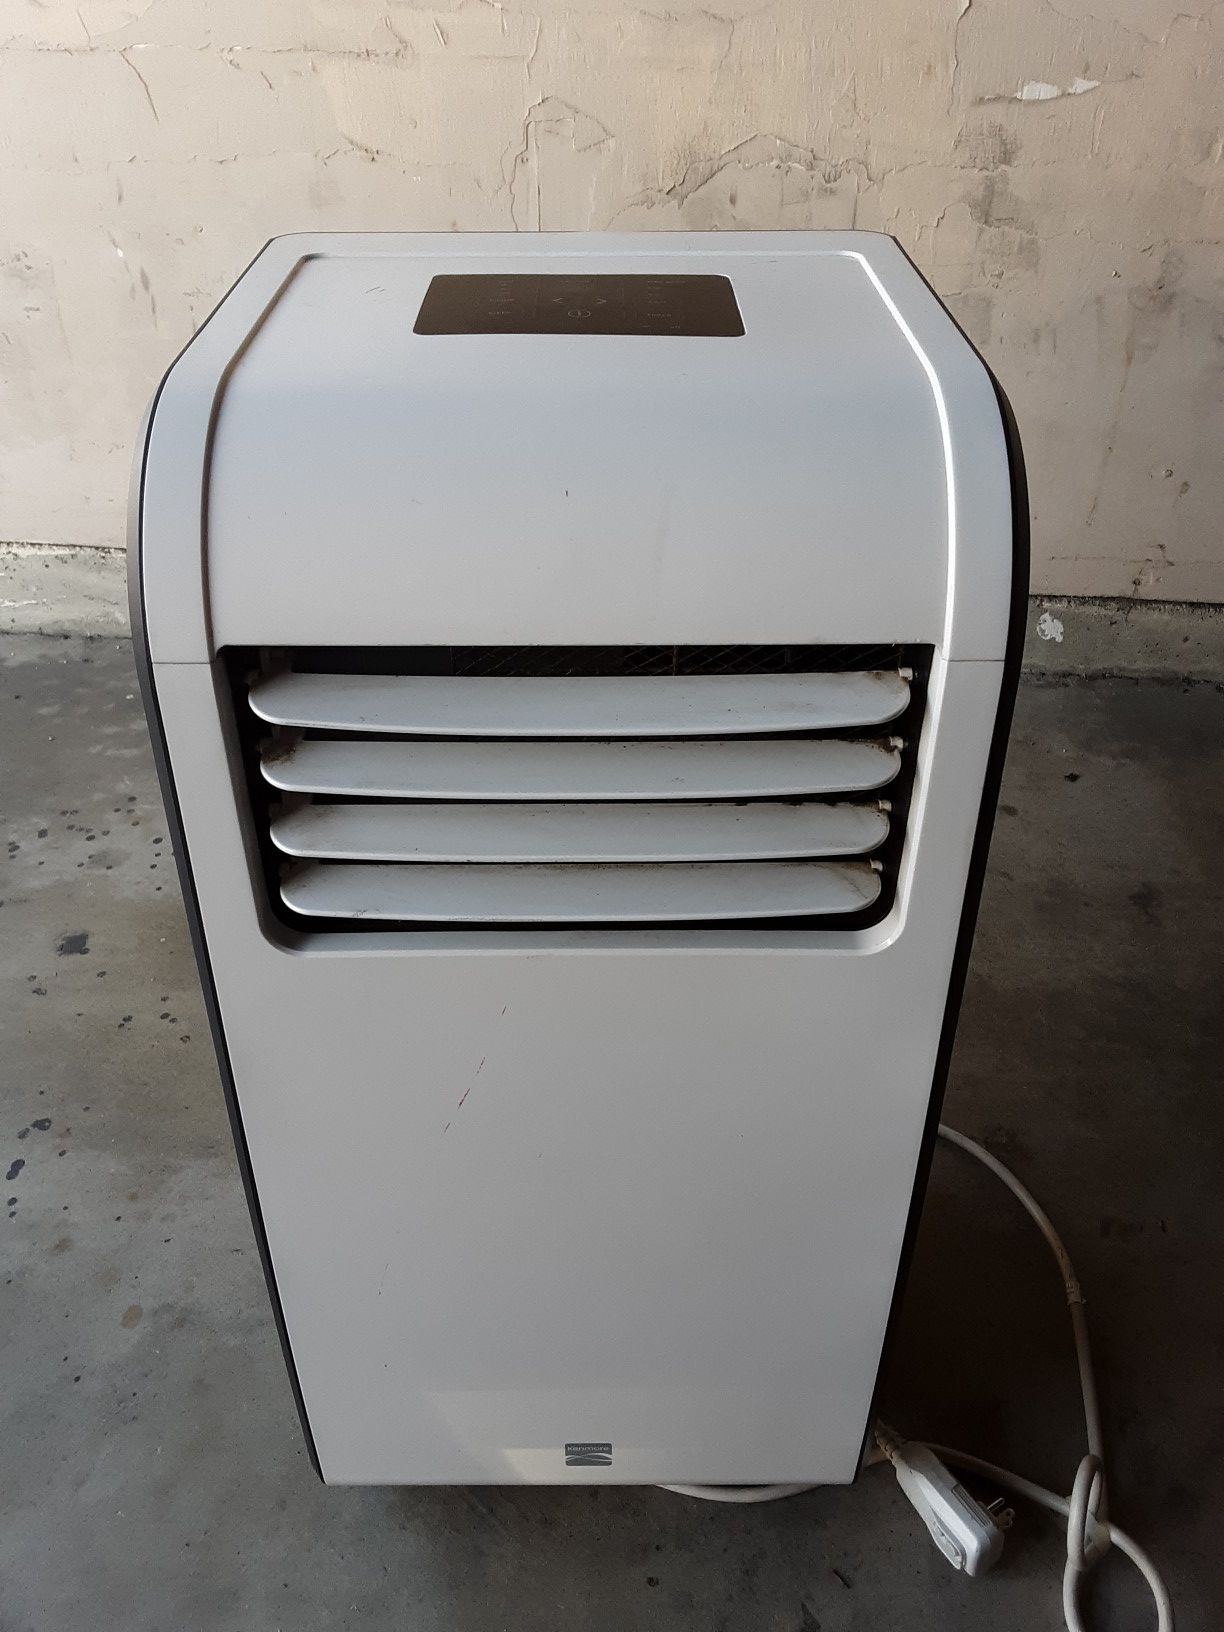 Kenmore Portable Air Conditioner